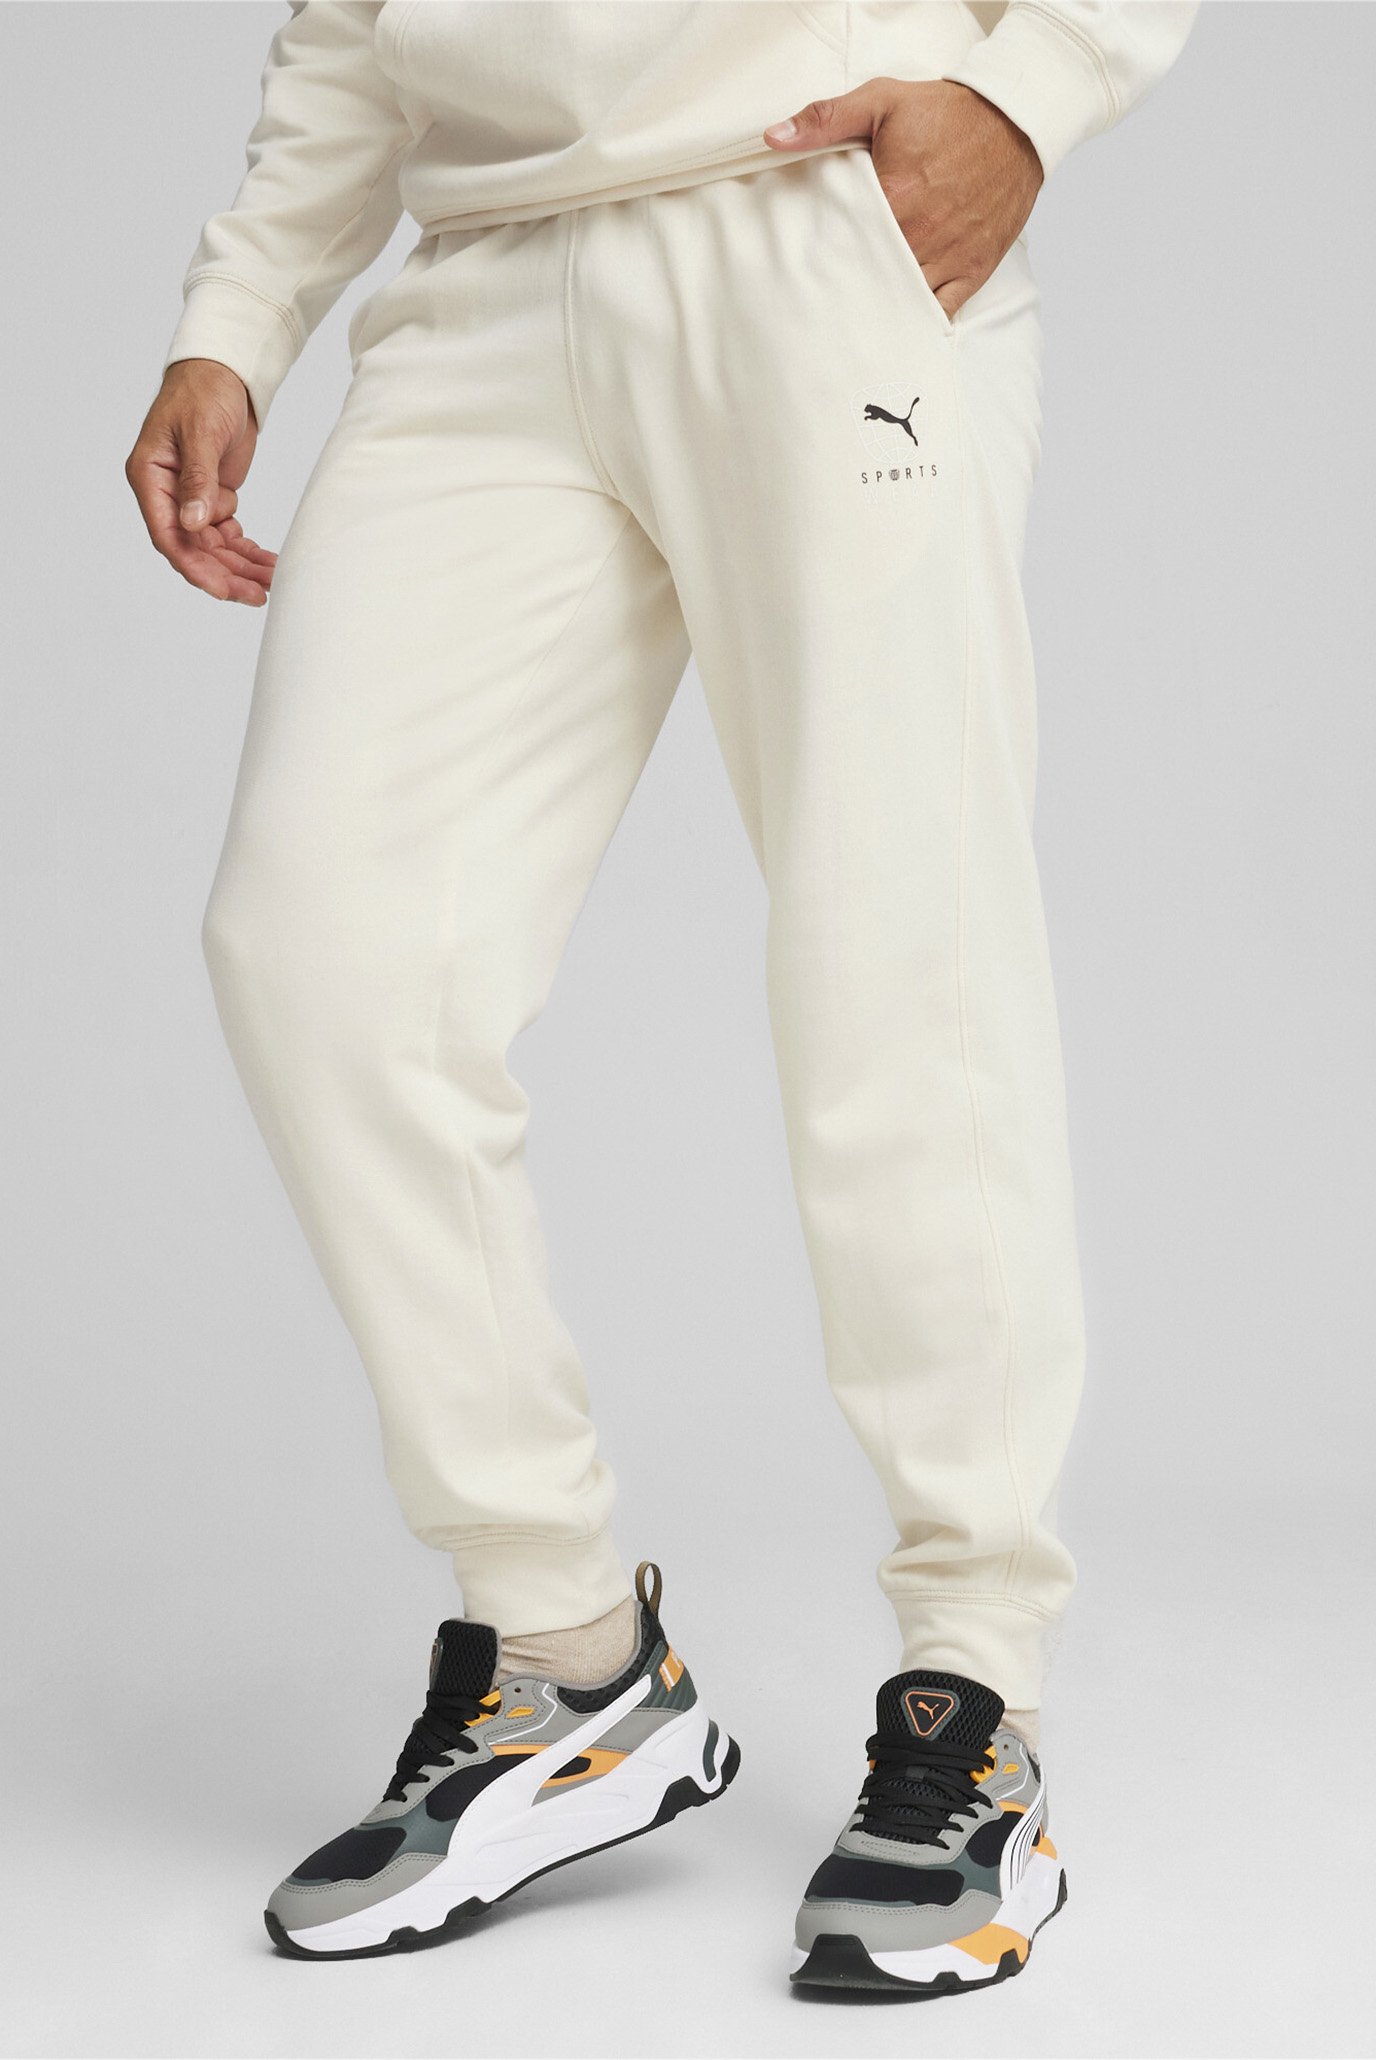 Чоловічі білі спортивні штани BETTER SPORTSWEAR Men's Sweatpants 1